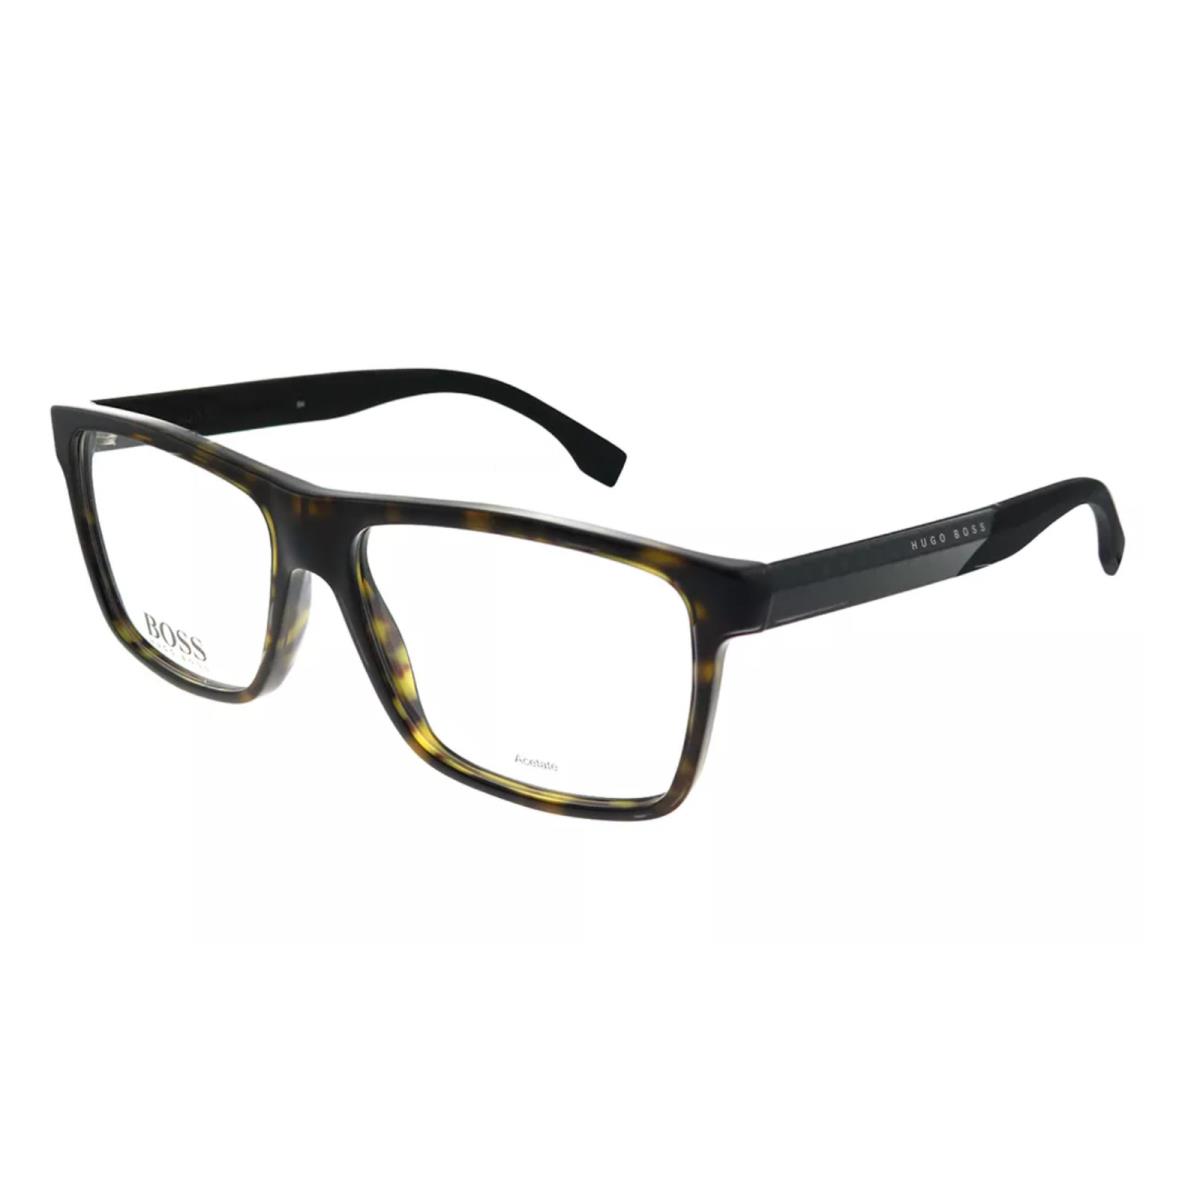 Hugo Boss Reading Glasses 0880 Hxf 55-15 Tortoise Carbon Fiber Frames Readers - Frame: Tortoise, Lens: Clear